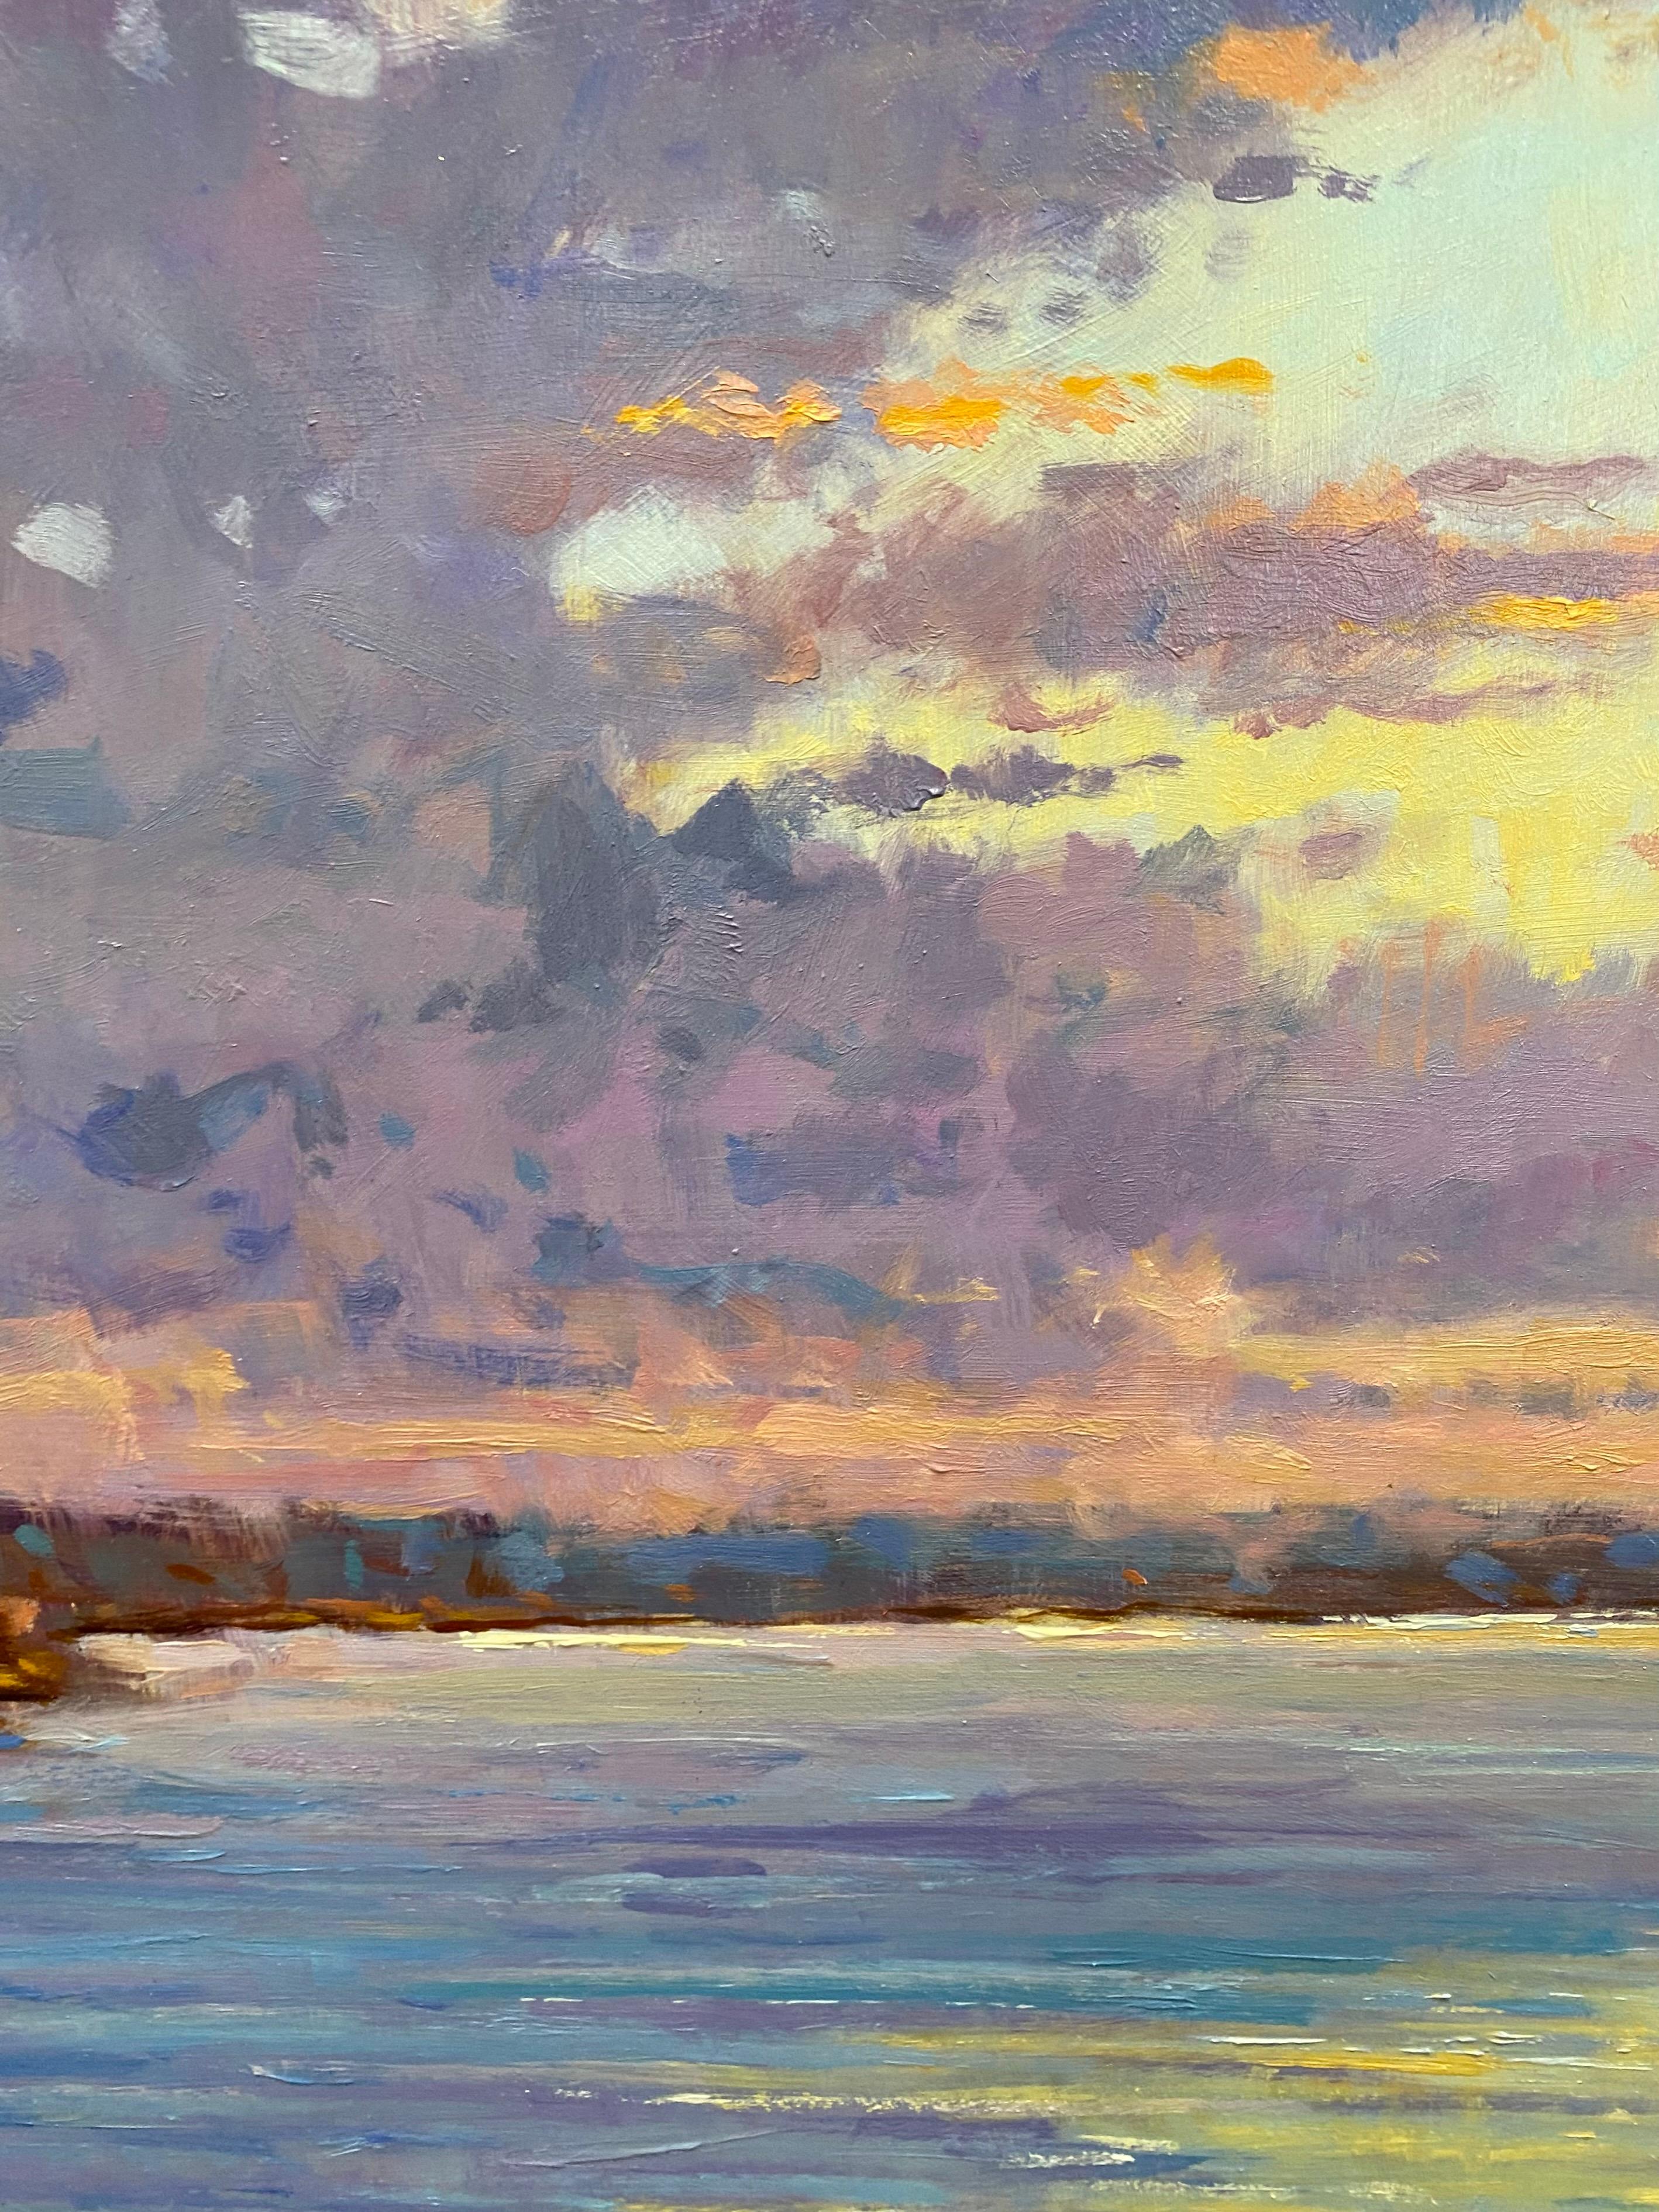 Der Genuss eines ruhigen Abendsegelns, buchstäblich in den Sonnenuntergang hinein, in einem einsamen Segelboot, das ein Bad in vielen Blau-, Lavendel-, Rosa- und Gelbtönen durchquert, weg von der Küste, der untergehenden Sonne entgegen, ist